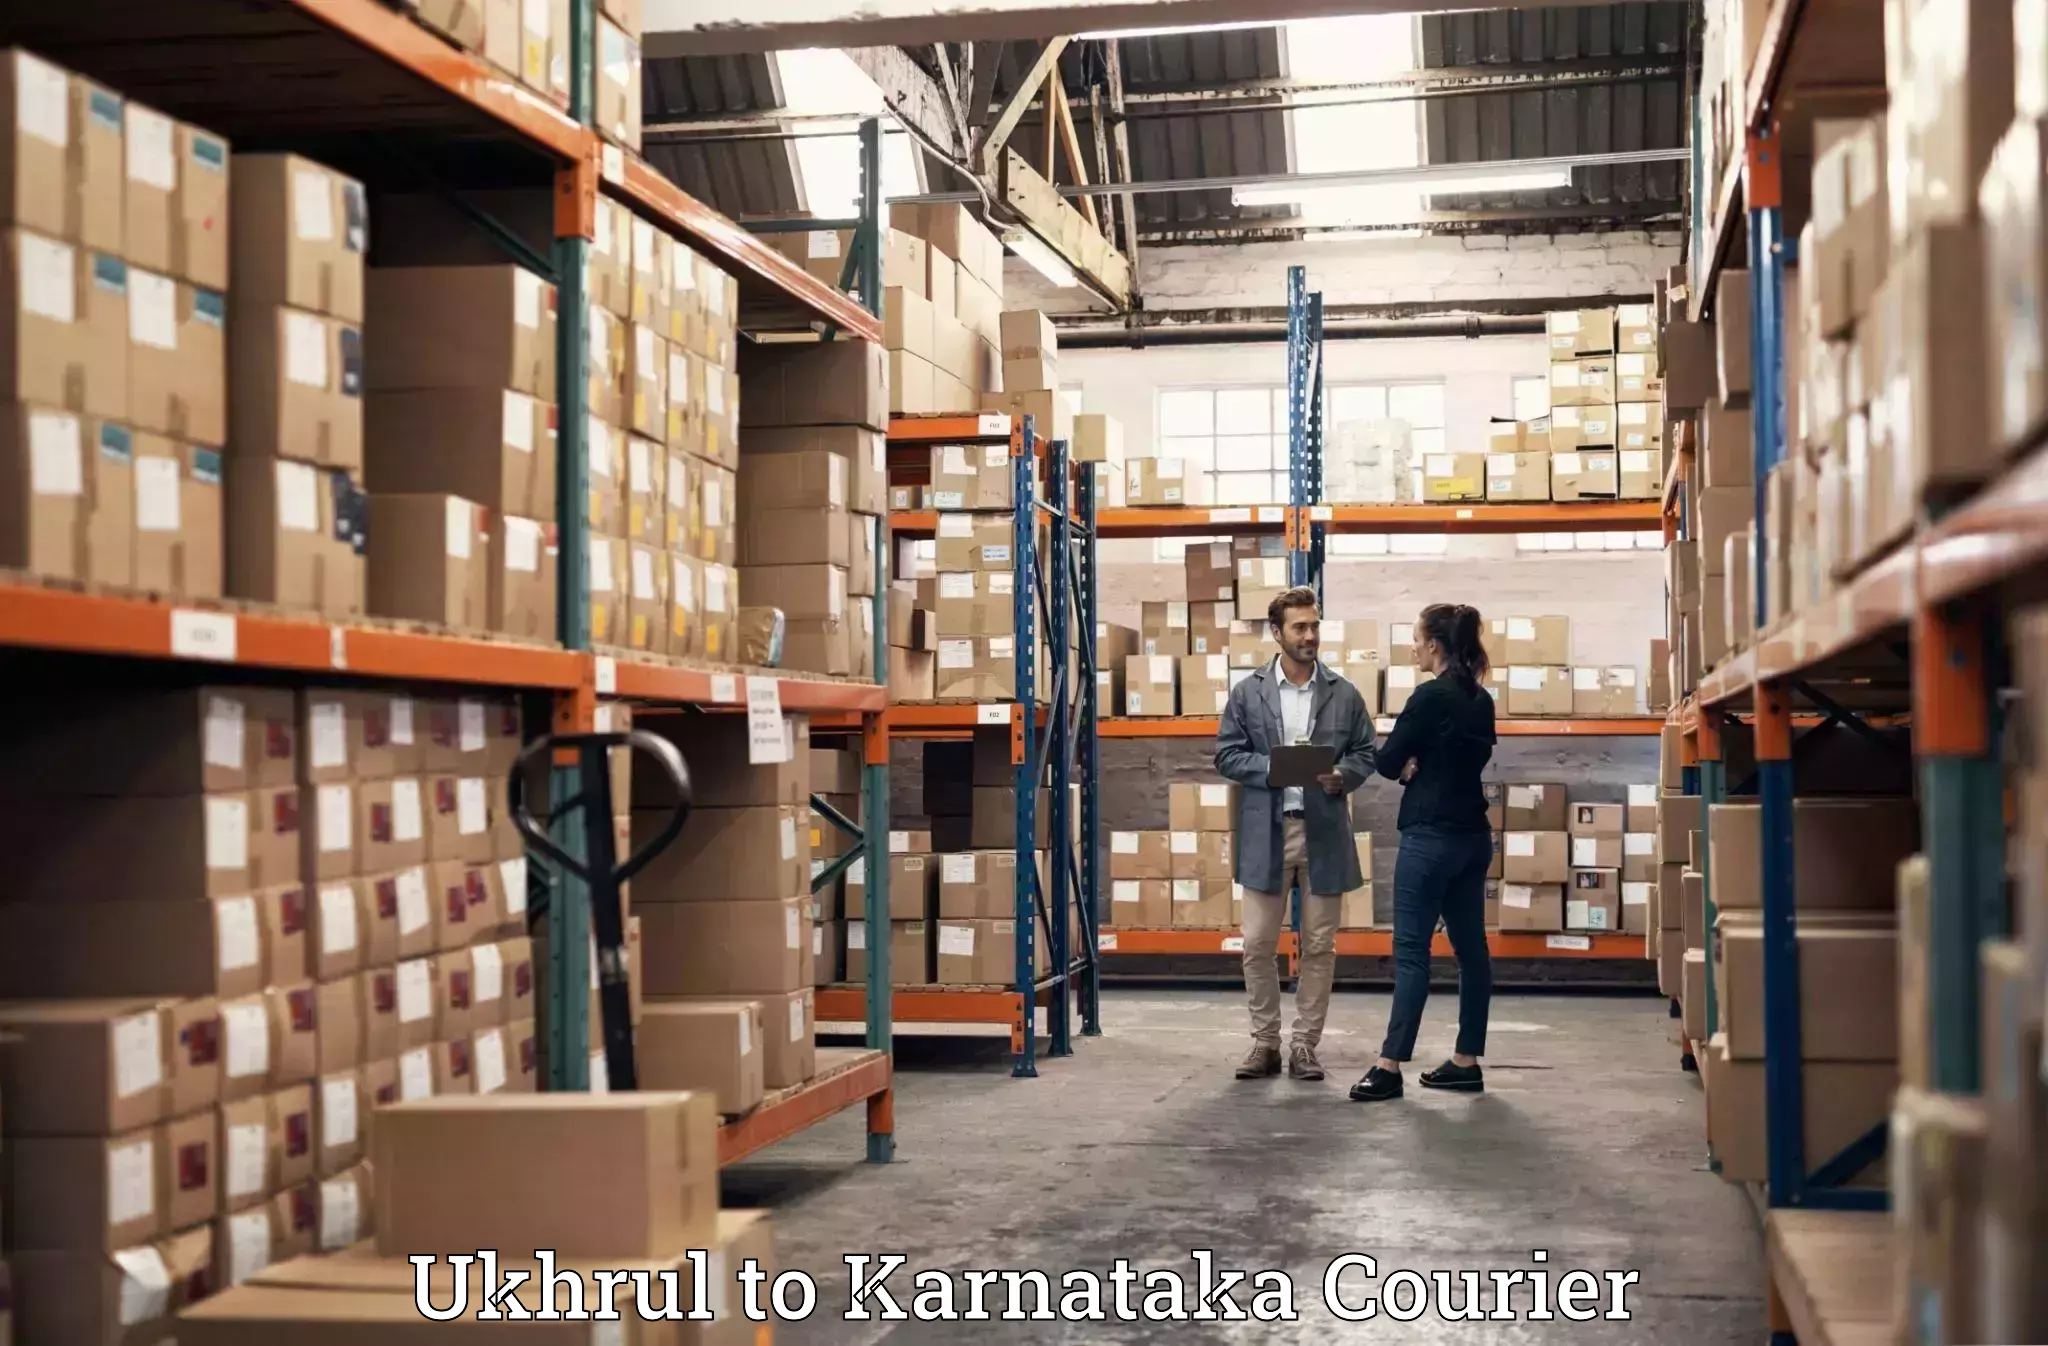 Luggage shipping efficiency Ukhrul to Karnataka